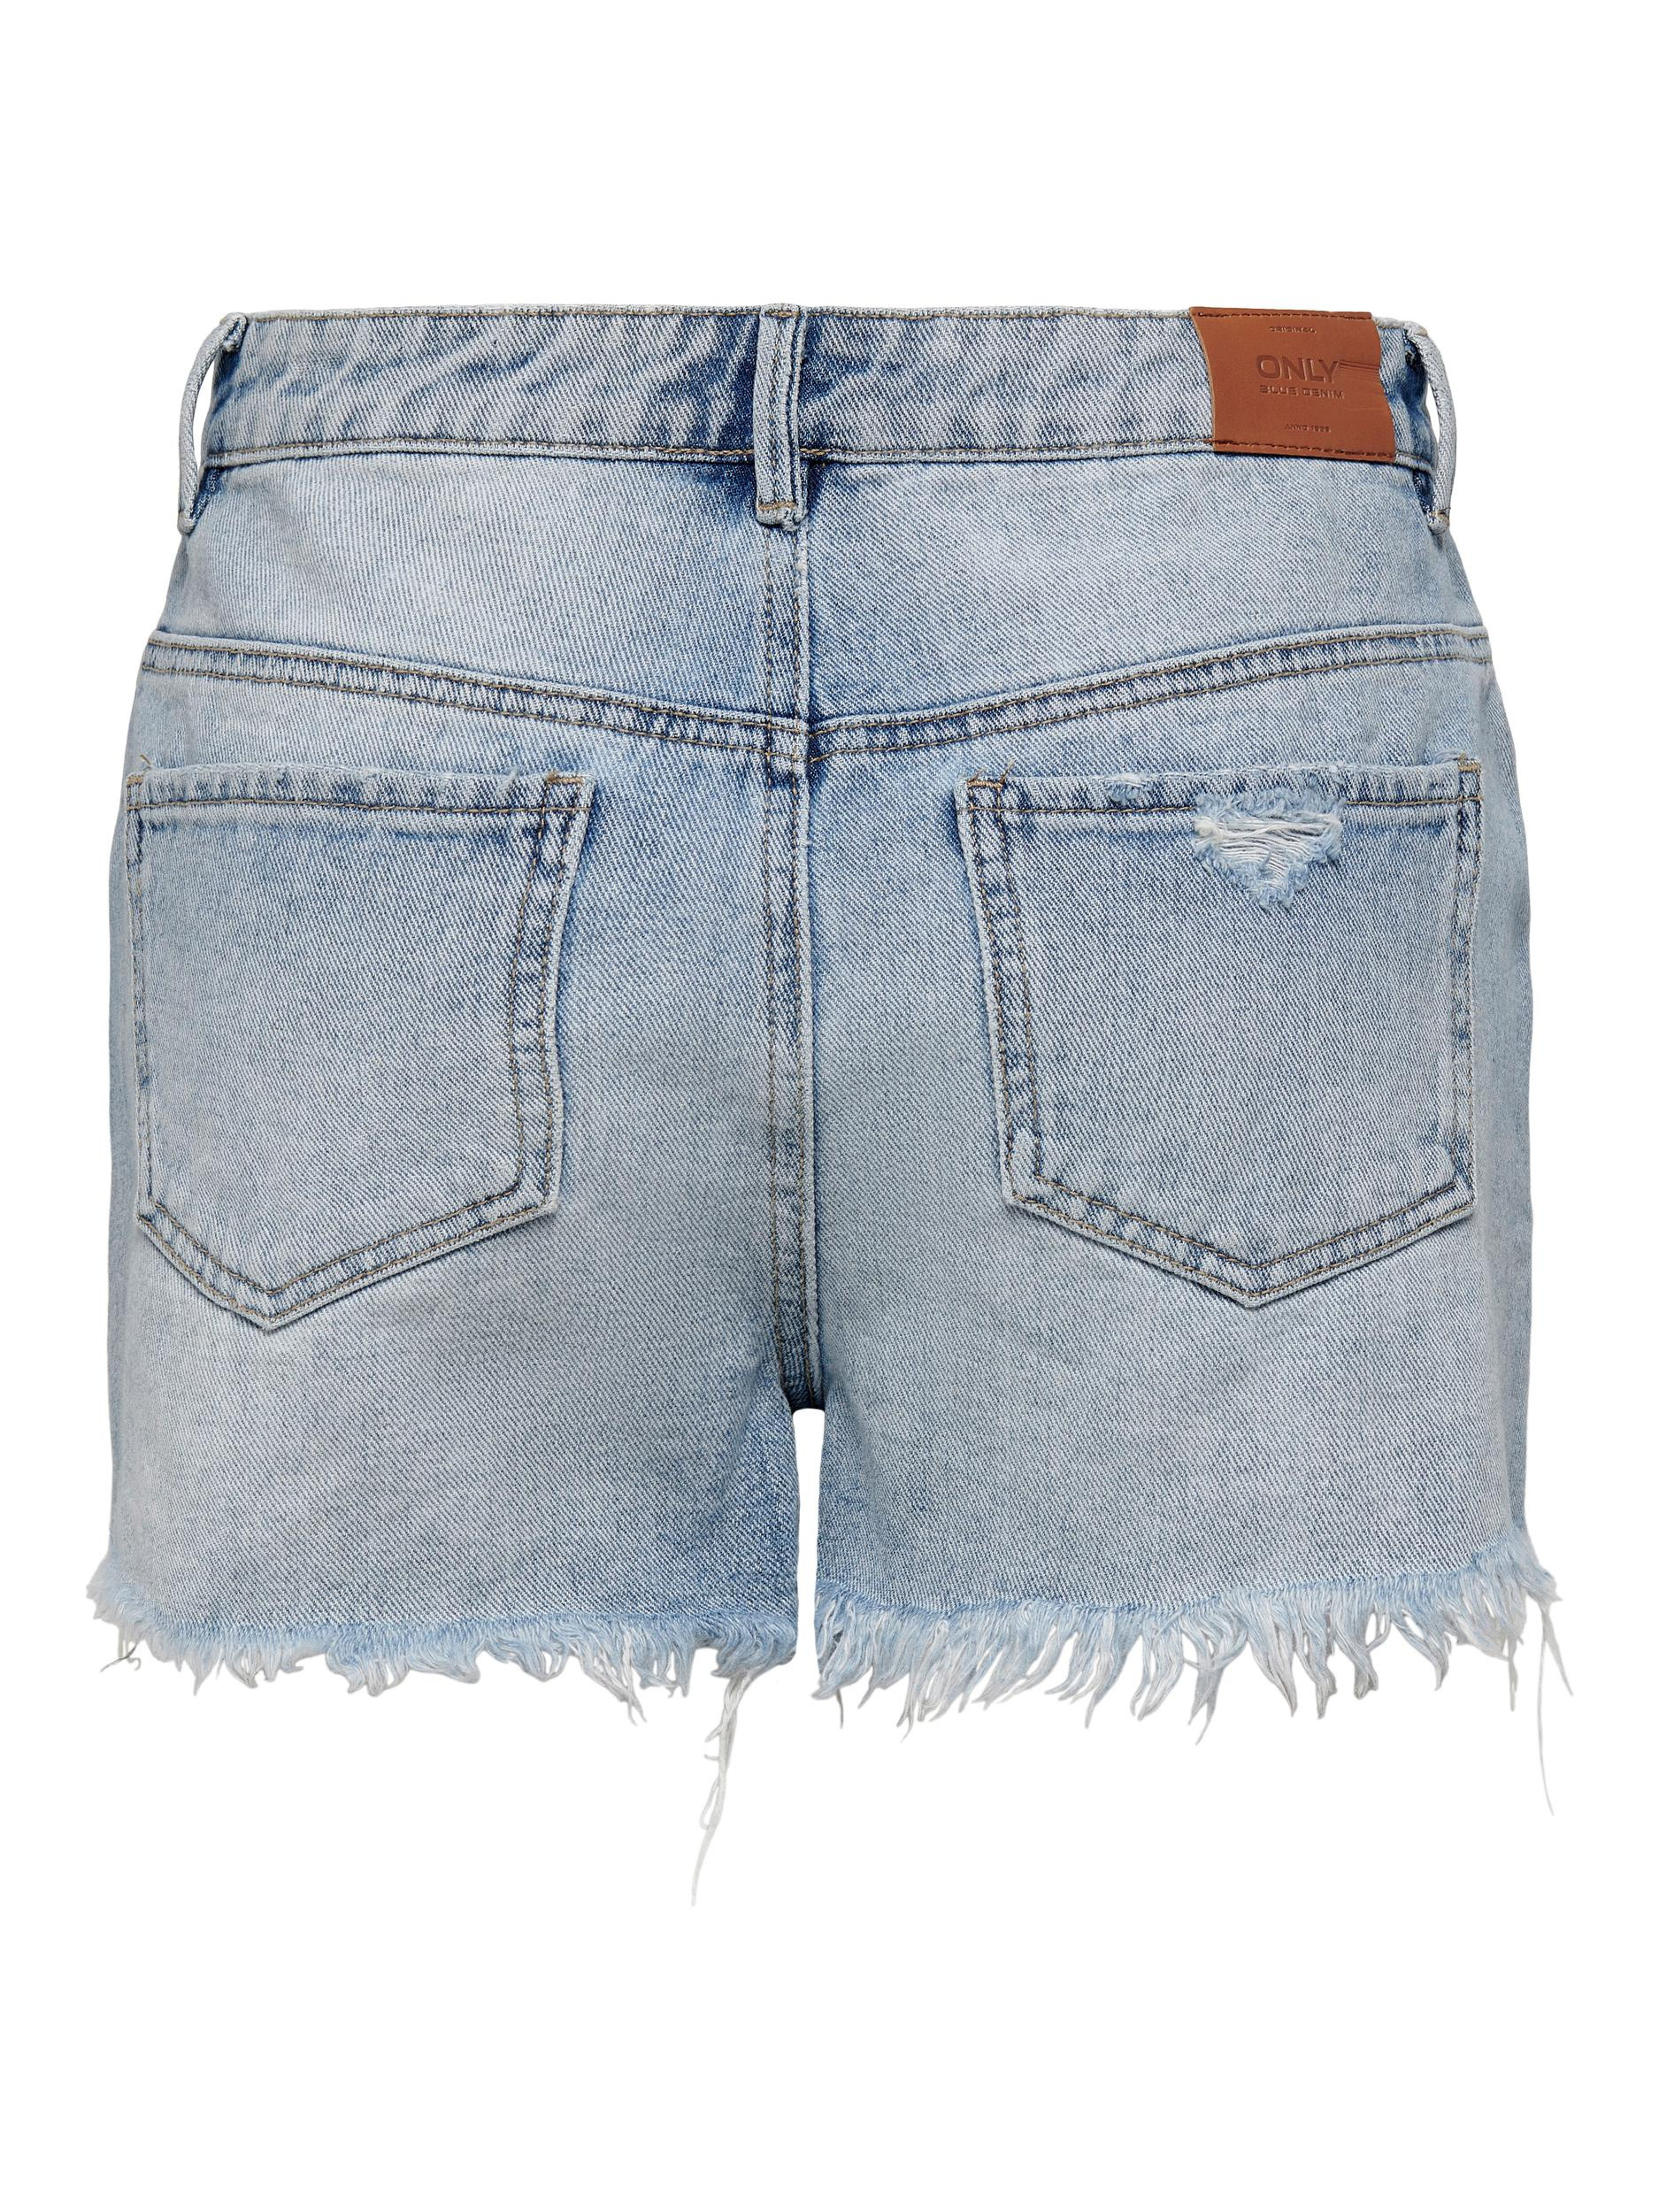 Only - Regular fit five-pocket shorts, Denim, large image number 1